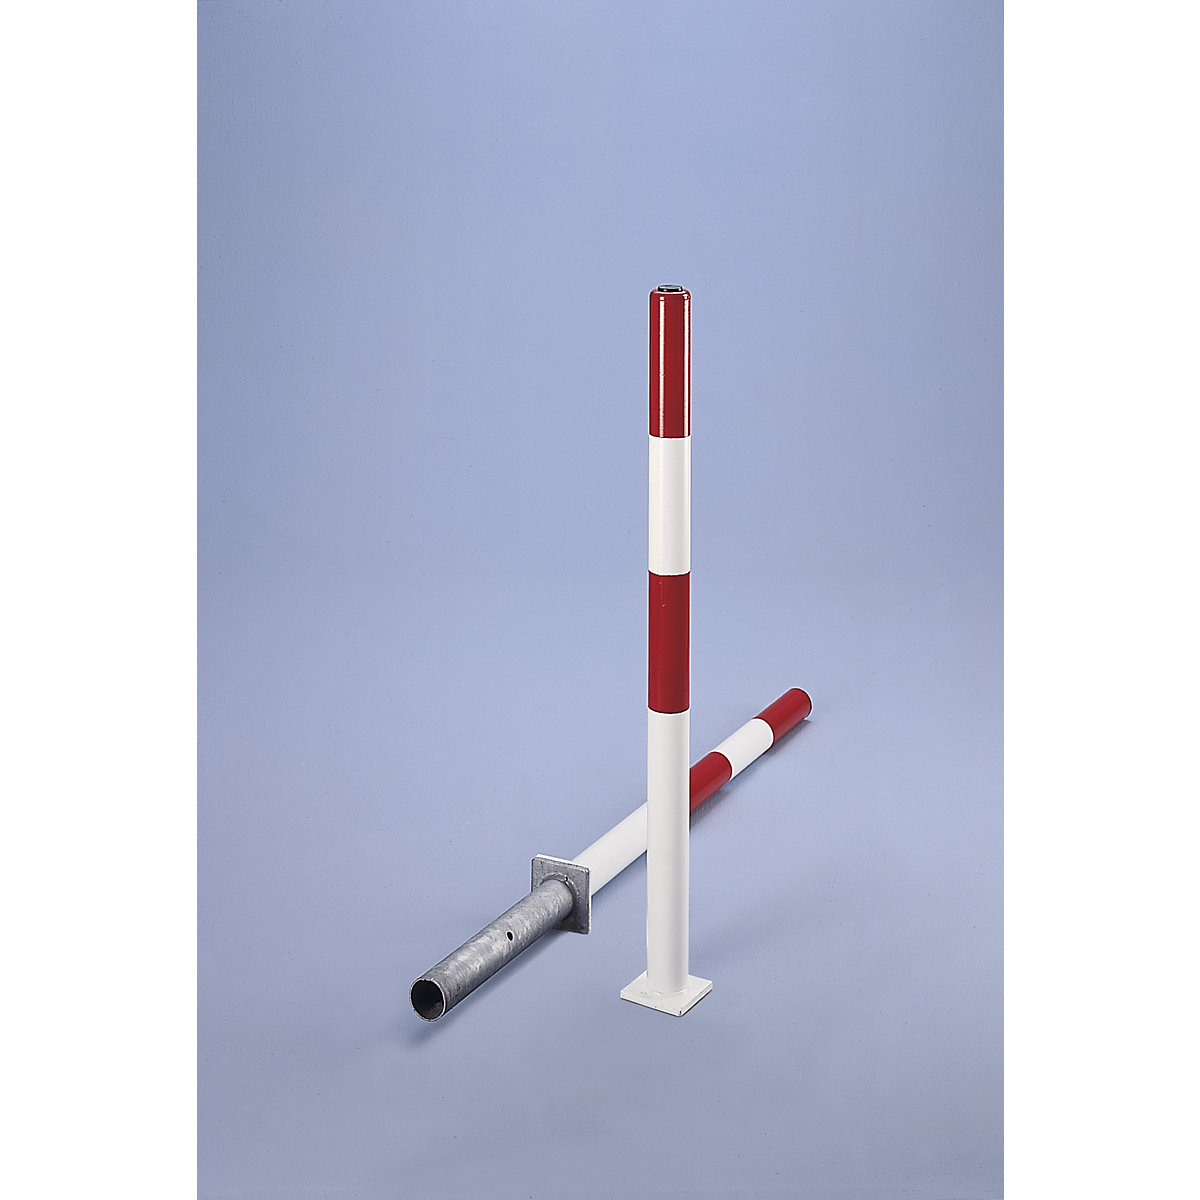 Poste de barreira em tubo de aço redondo, vermelho / branco, para encastrar em betão, Ø 60 mm, com fechadura de cilindro incl. 3 chaves-2